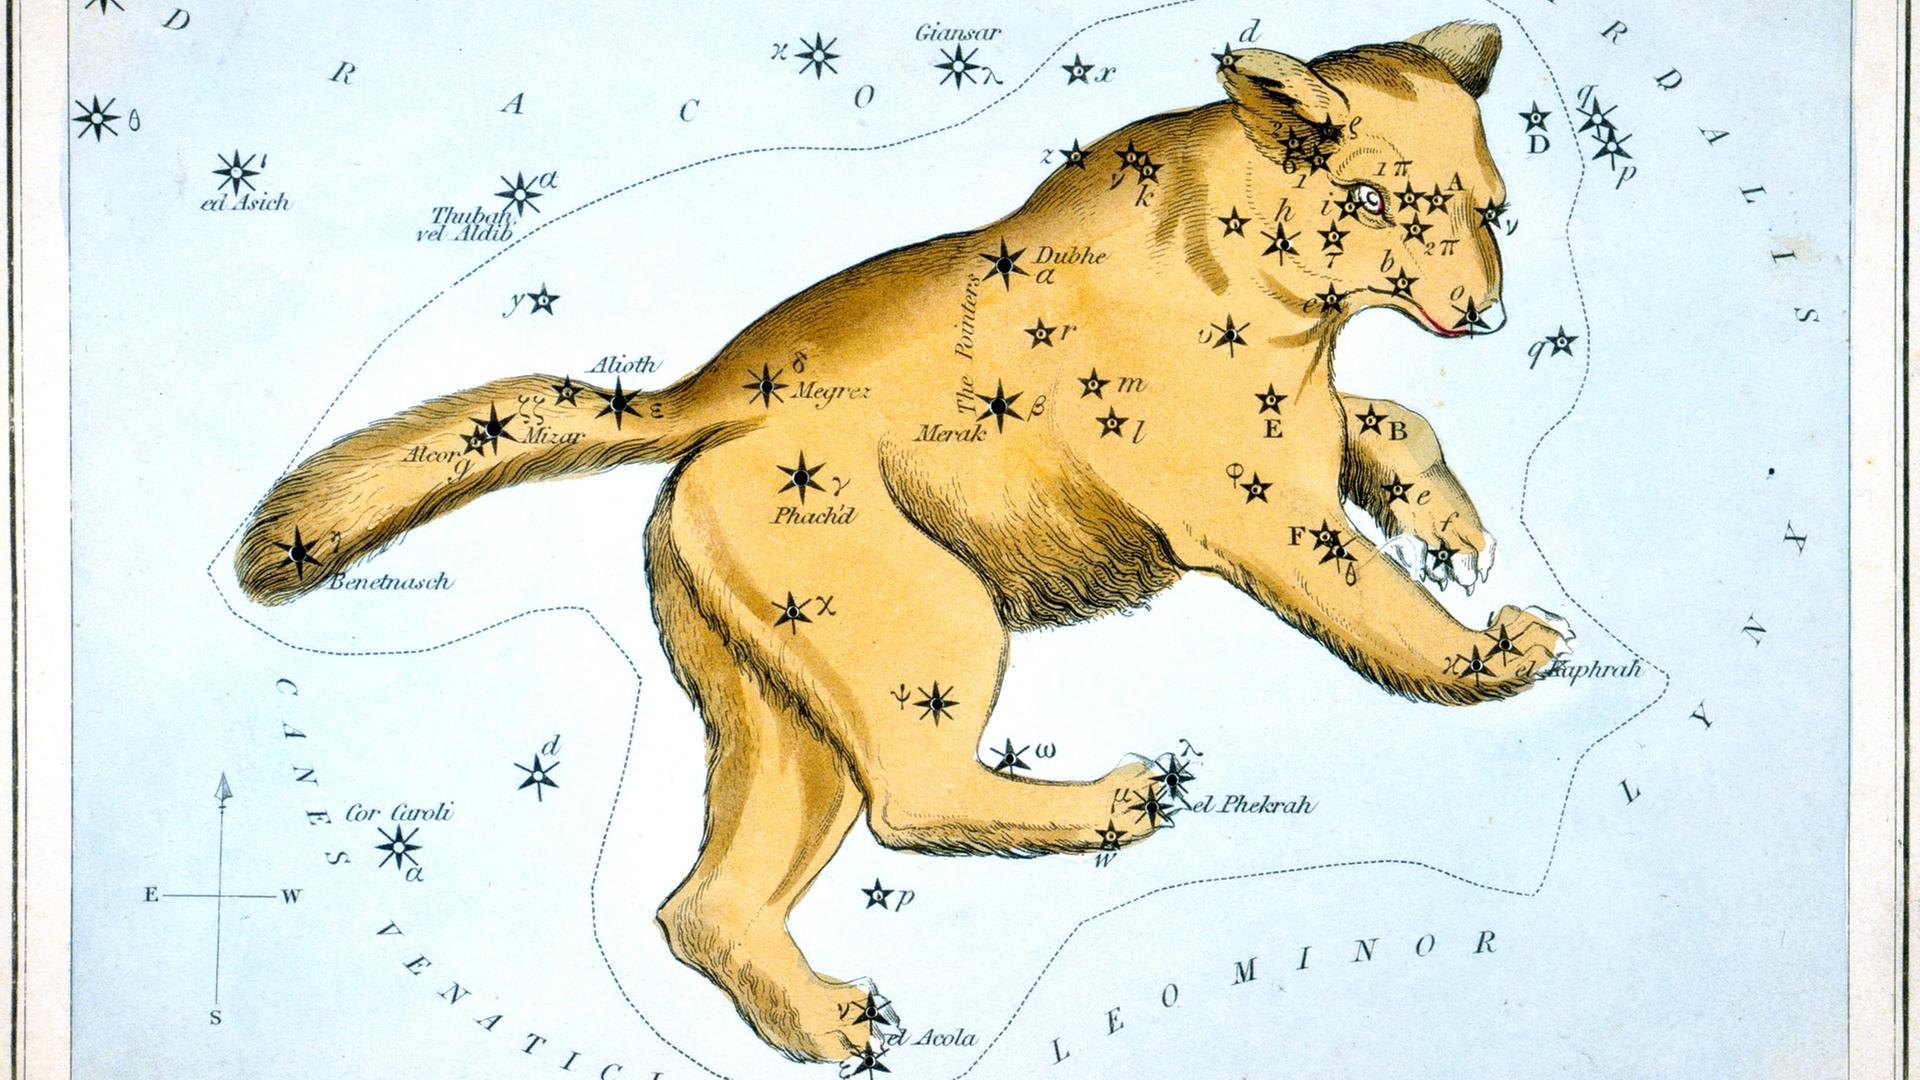 Historische Sternnamen, wie hier im Großen Bär, gibt es seit Jahrtausenden – die IAU hat nun etliche davon offiziell bestätigt.